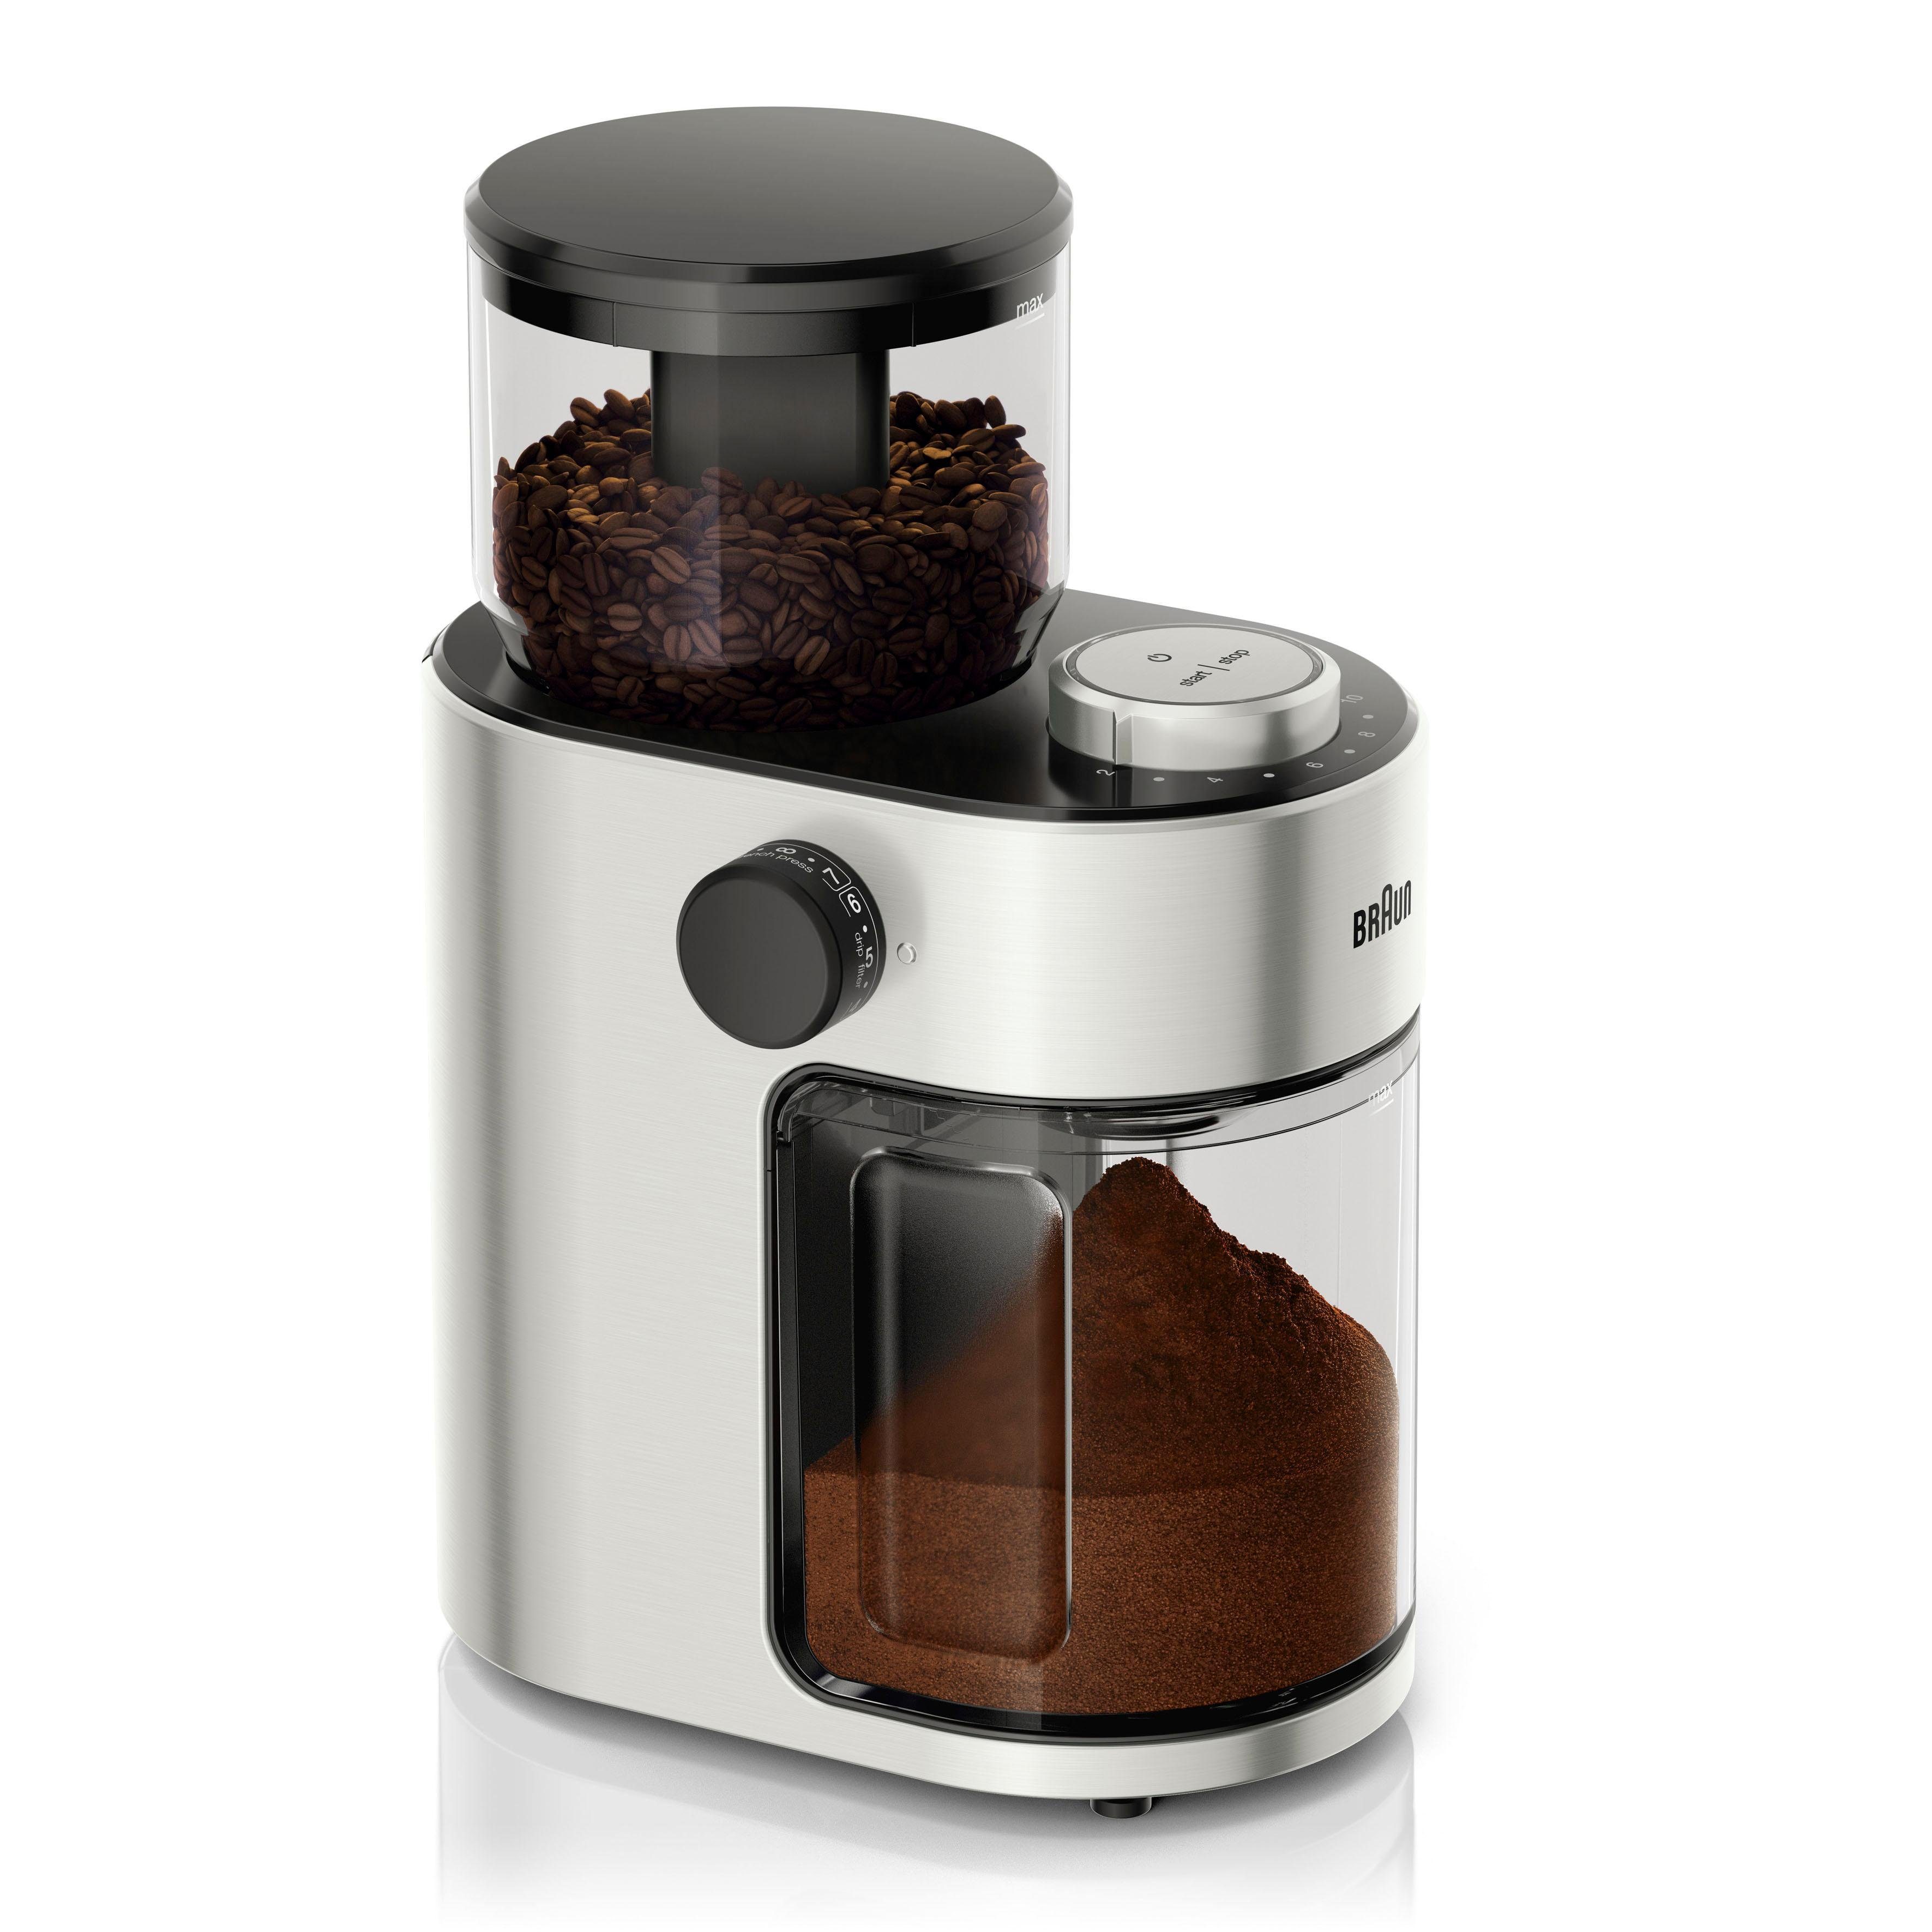 Braun Kaffeemühle Kaffeemühle FreshSet KG7070, 110 W, Scheibenmahlwerk, 220  g Bohnenbehälter, mit Überhitzungsschutz online kaufen | OTTO